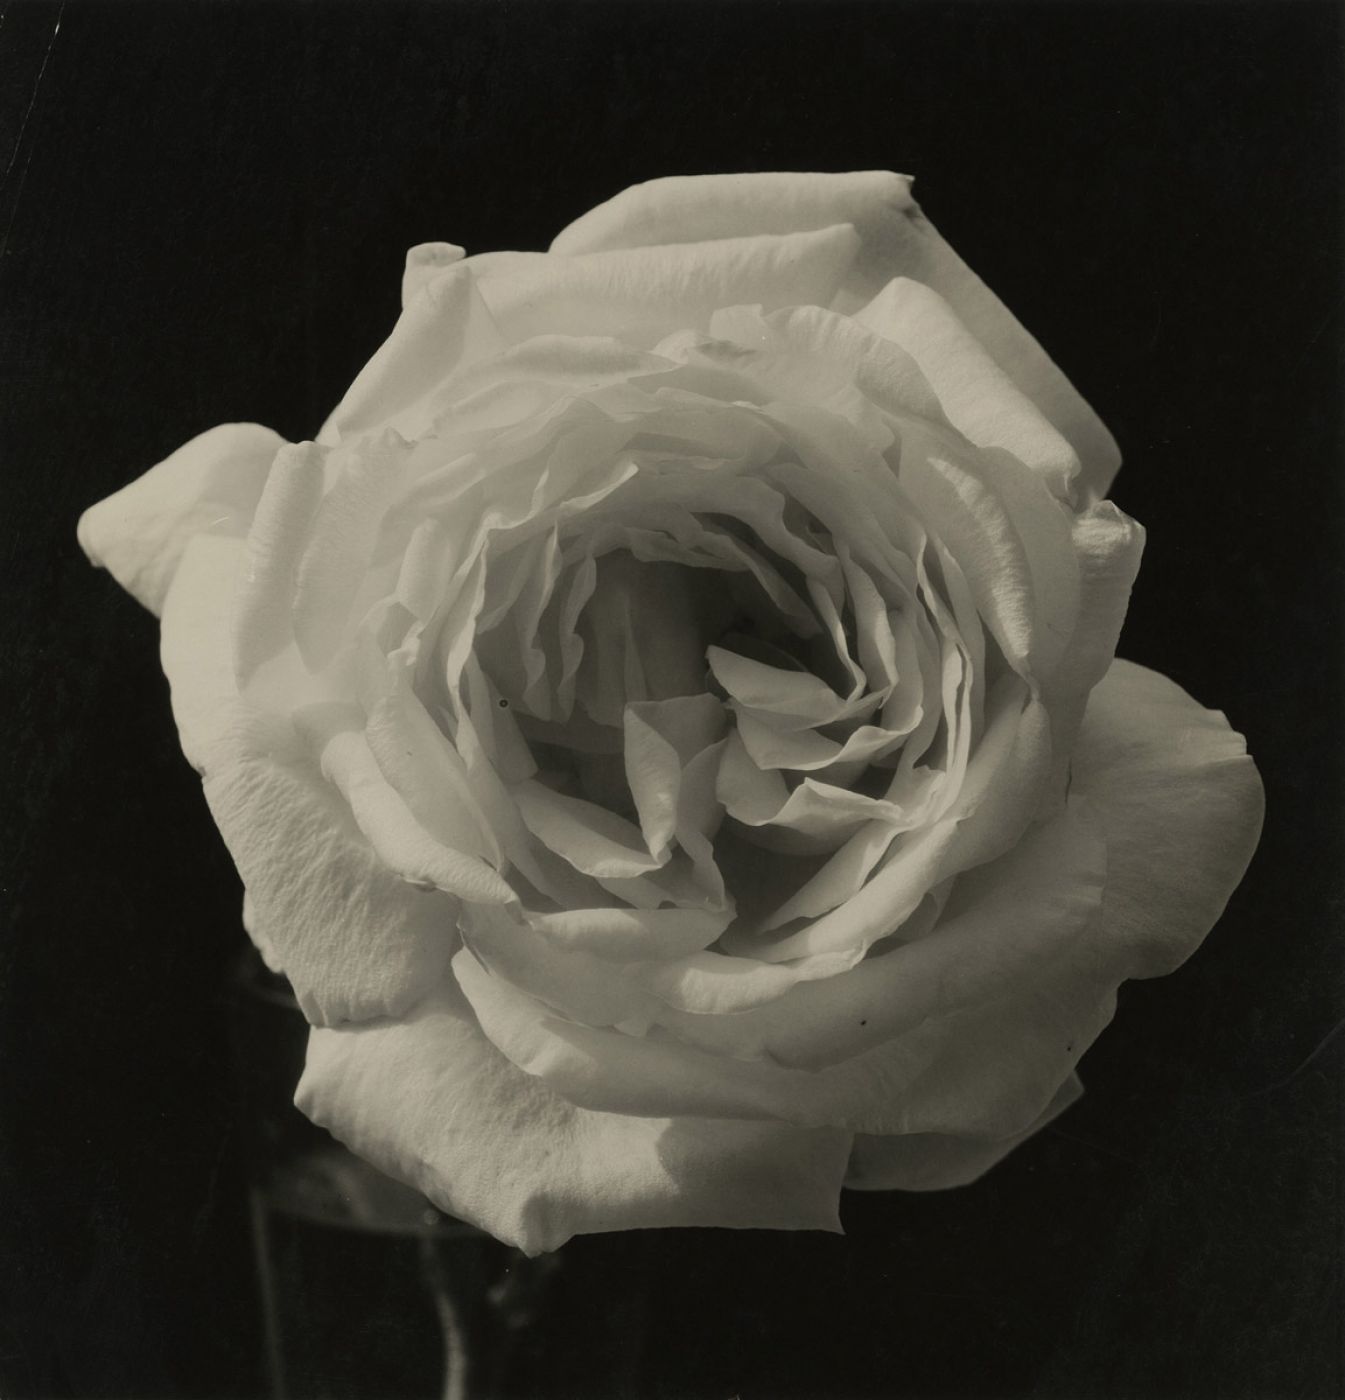 Edward Steichen, “Untitled”, 1920